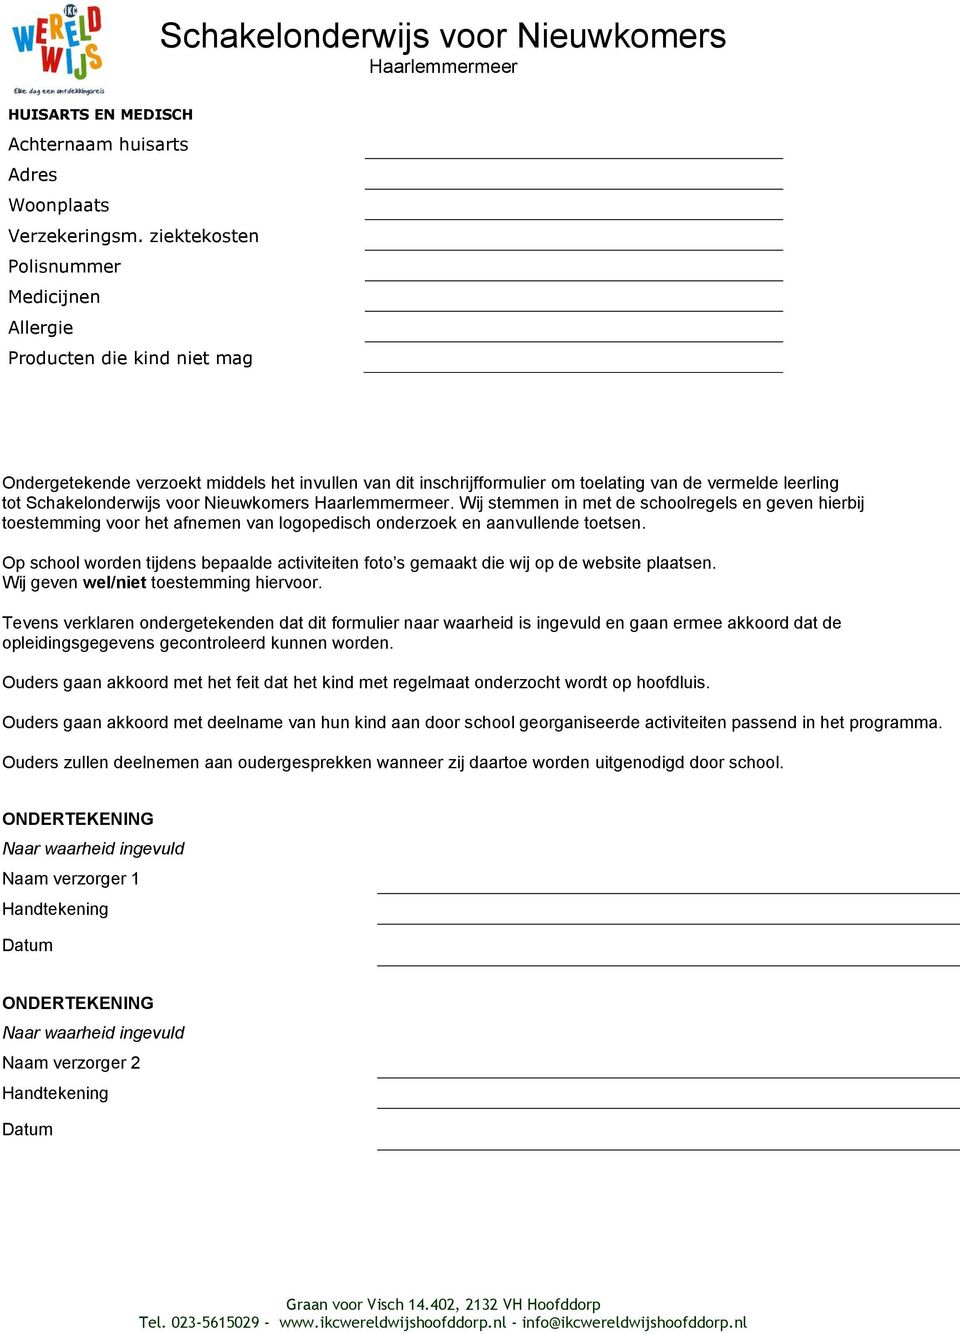 Schakelonderwijs voor Nieuwkomers. Wij stemmen in met de schoolregels en geven hierbij toestemming voor het afnemen van logopedisch onderzoek en aanvullende toetsen.